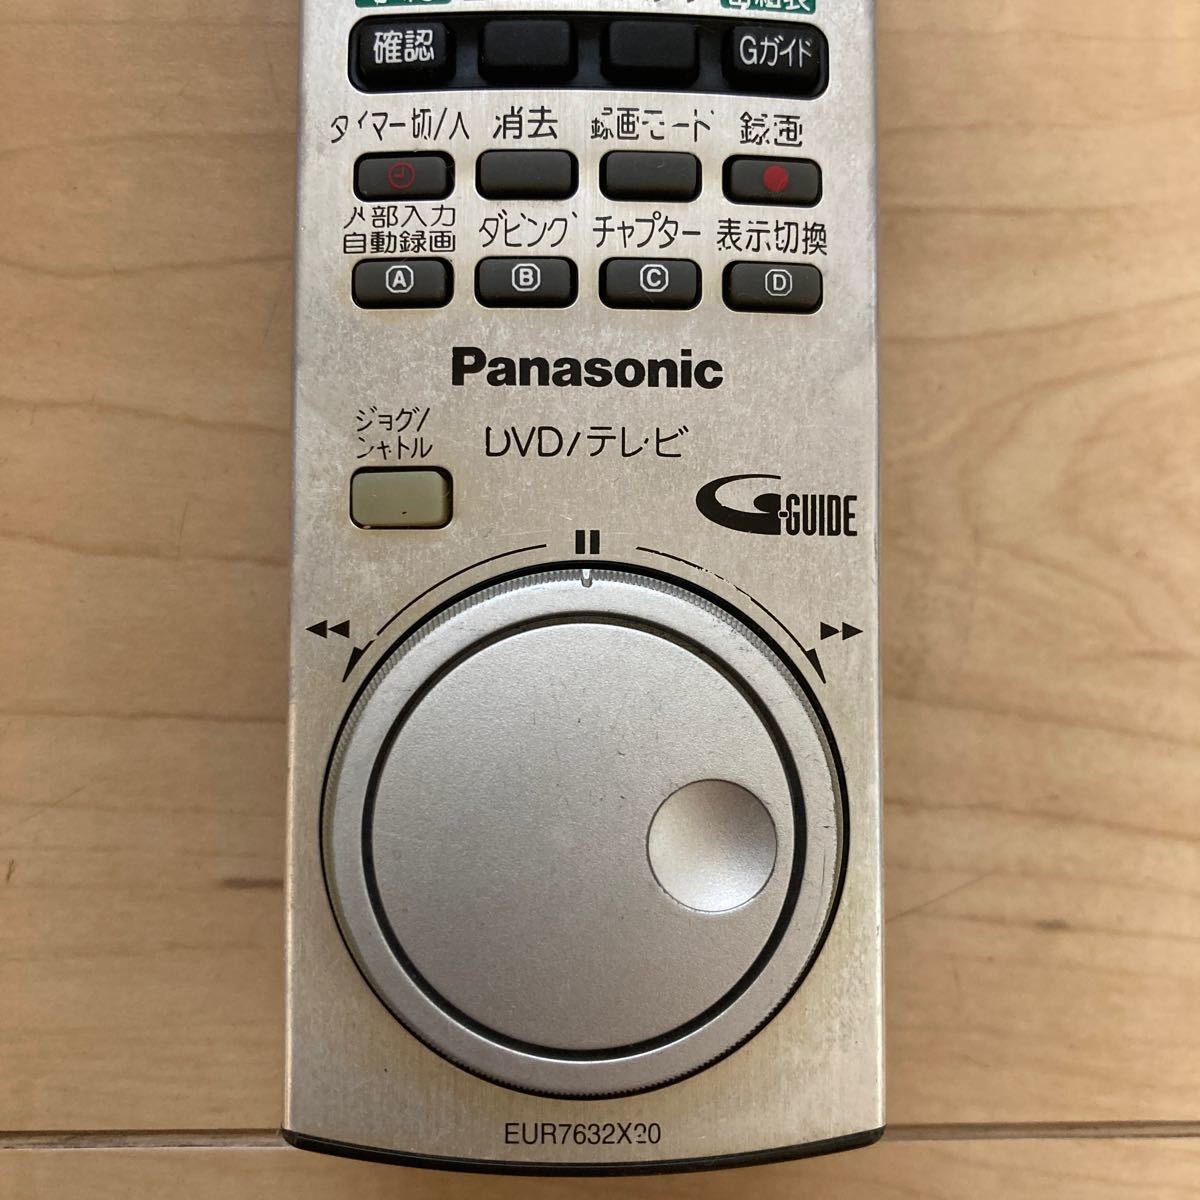 パナソニック Panasonic EUR7632X20 DMR-E330H/DMR-E220H用リモコン HDDレコーダー用リモコンの画像5